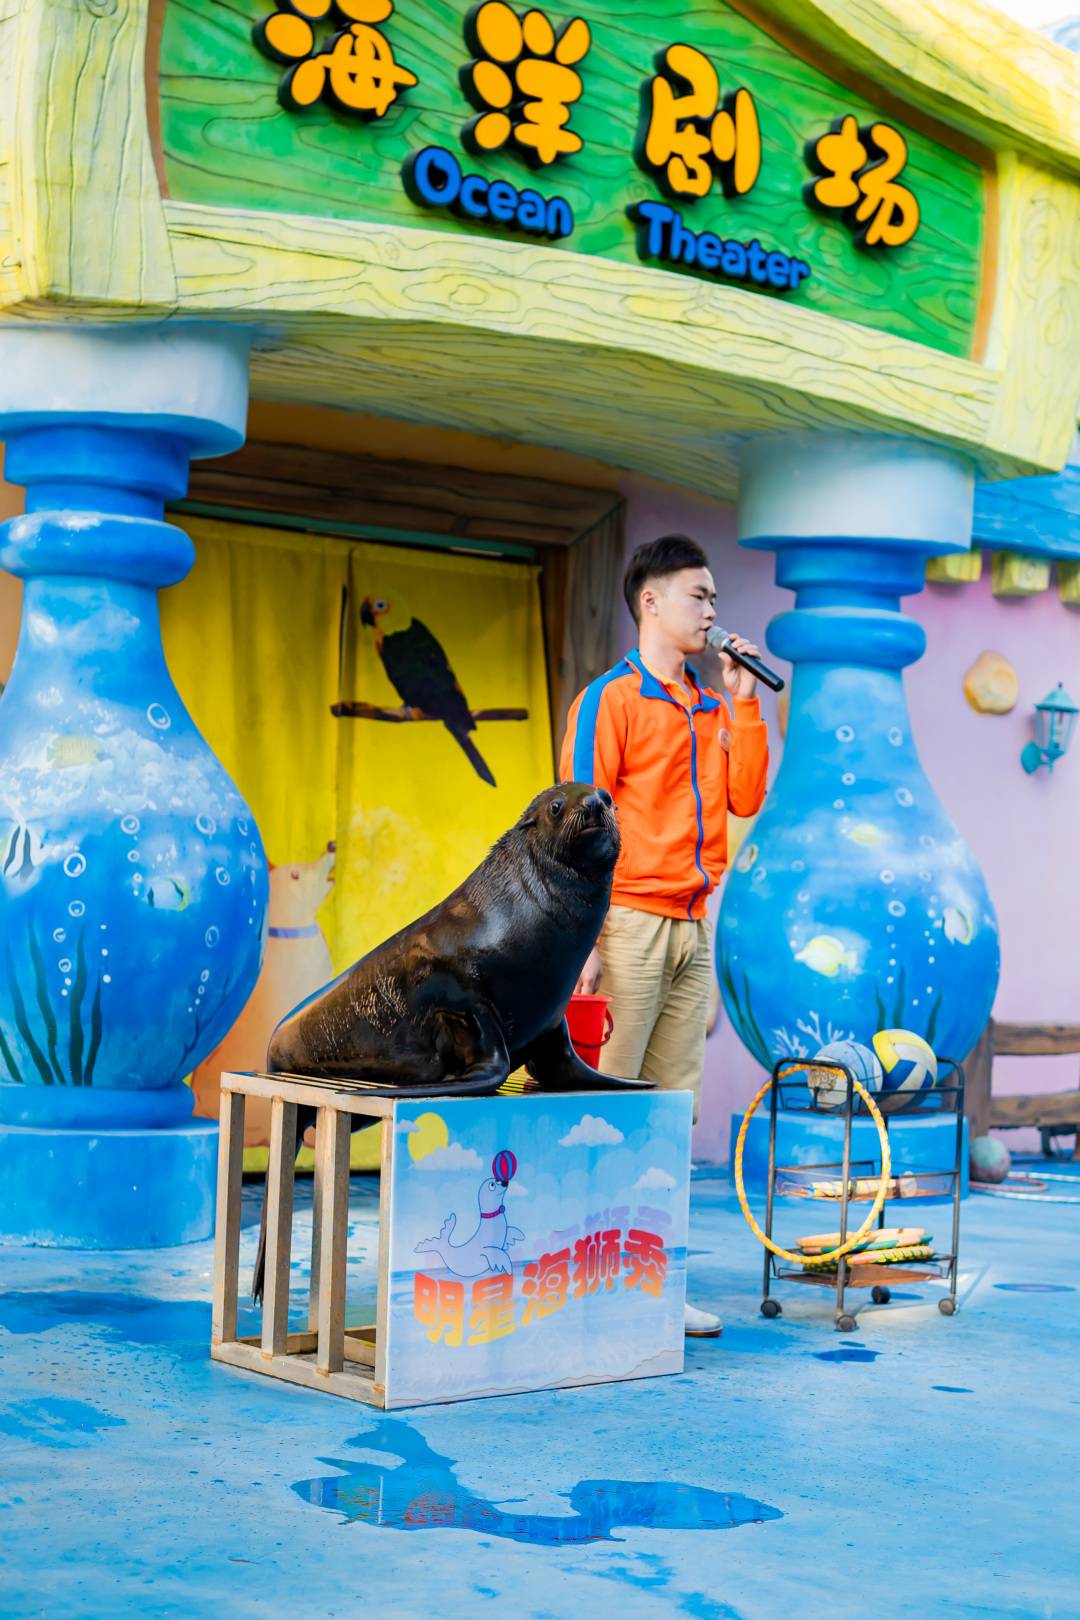 【7-8月特惠】广州融创明星动物园三人票，购买后次日-8月31日内入园一次